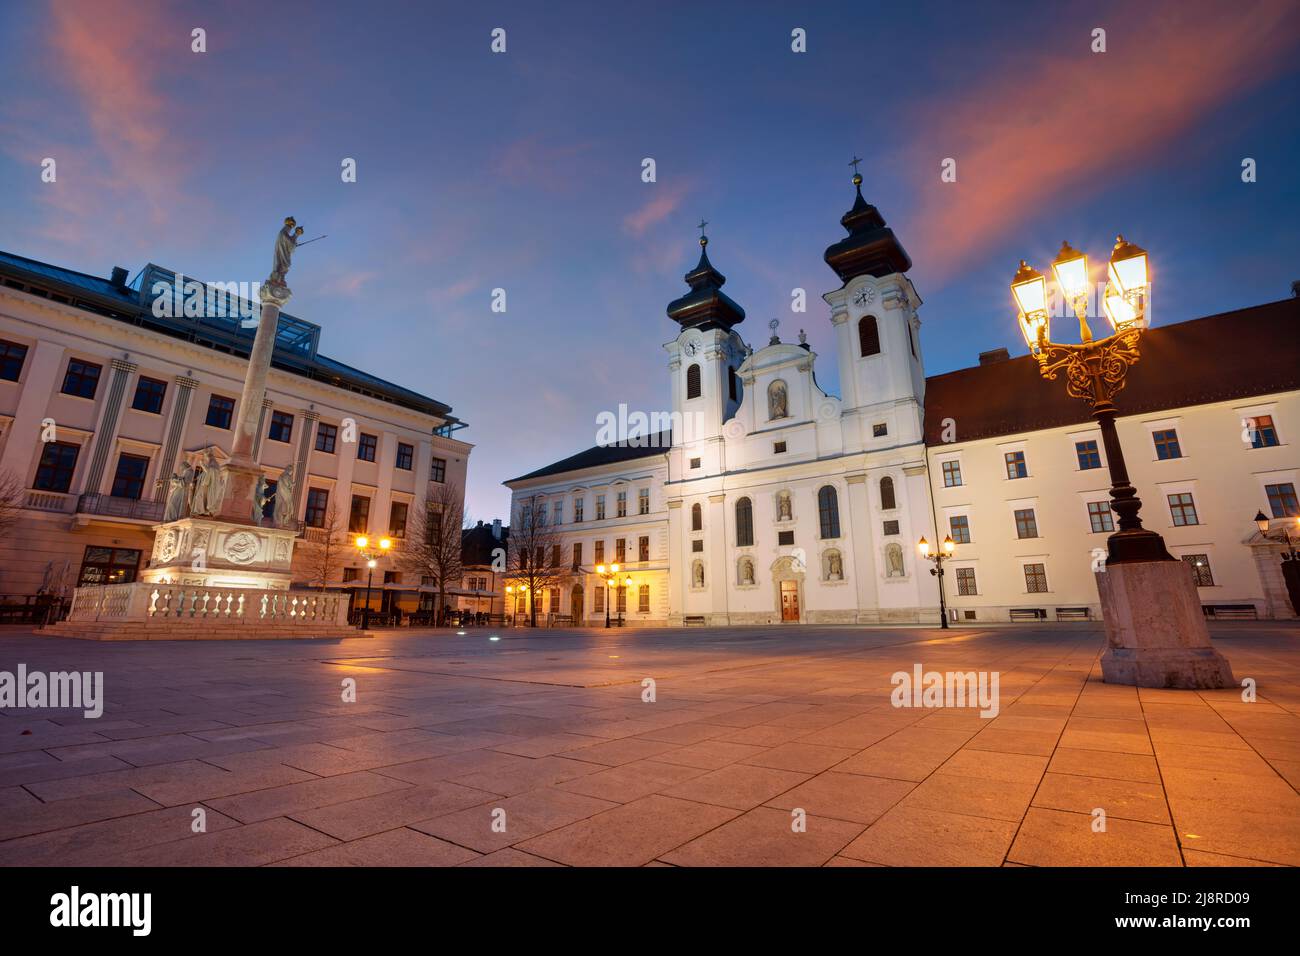 Gyor, Ungheria. Immagine del paesaggio urbano del centro di Gyor, Ungheria con Piazza Szechenyi all'alba. Foto Stock